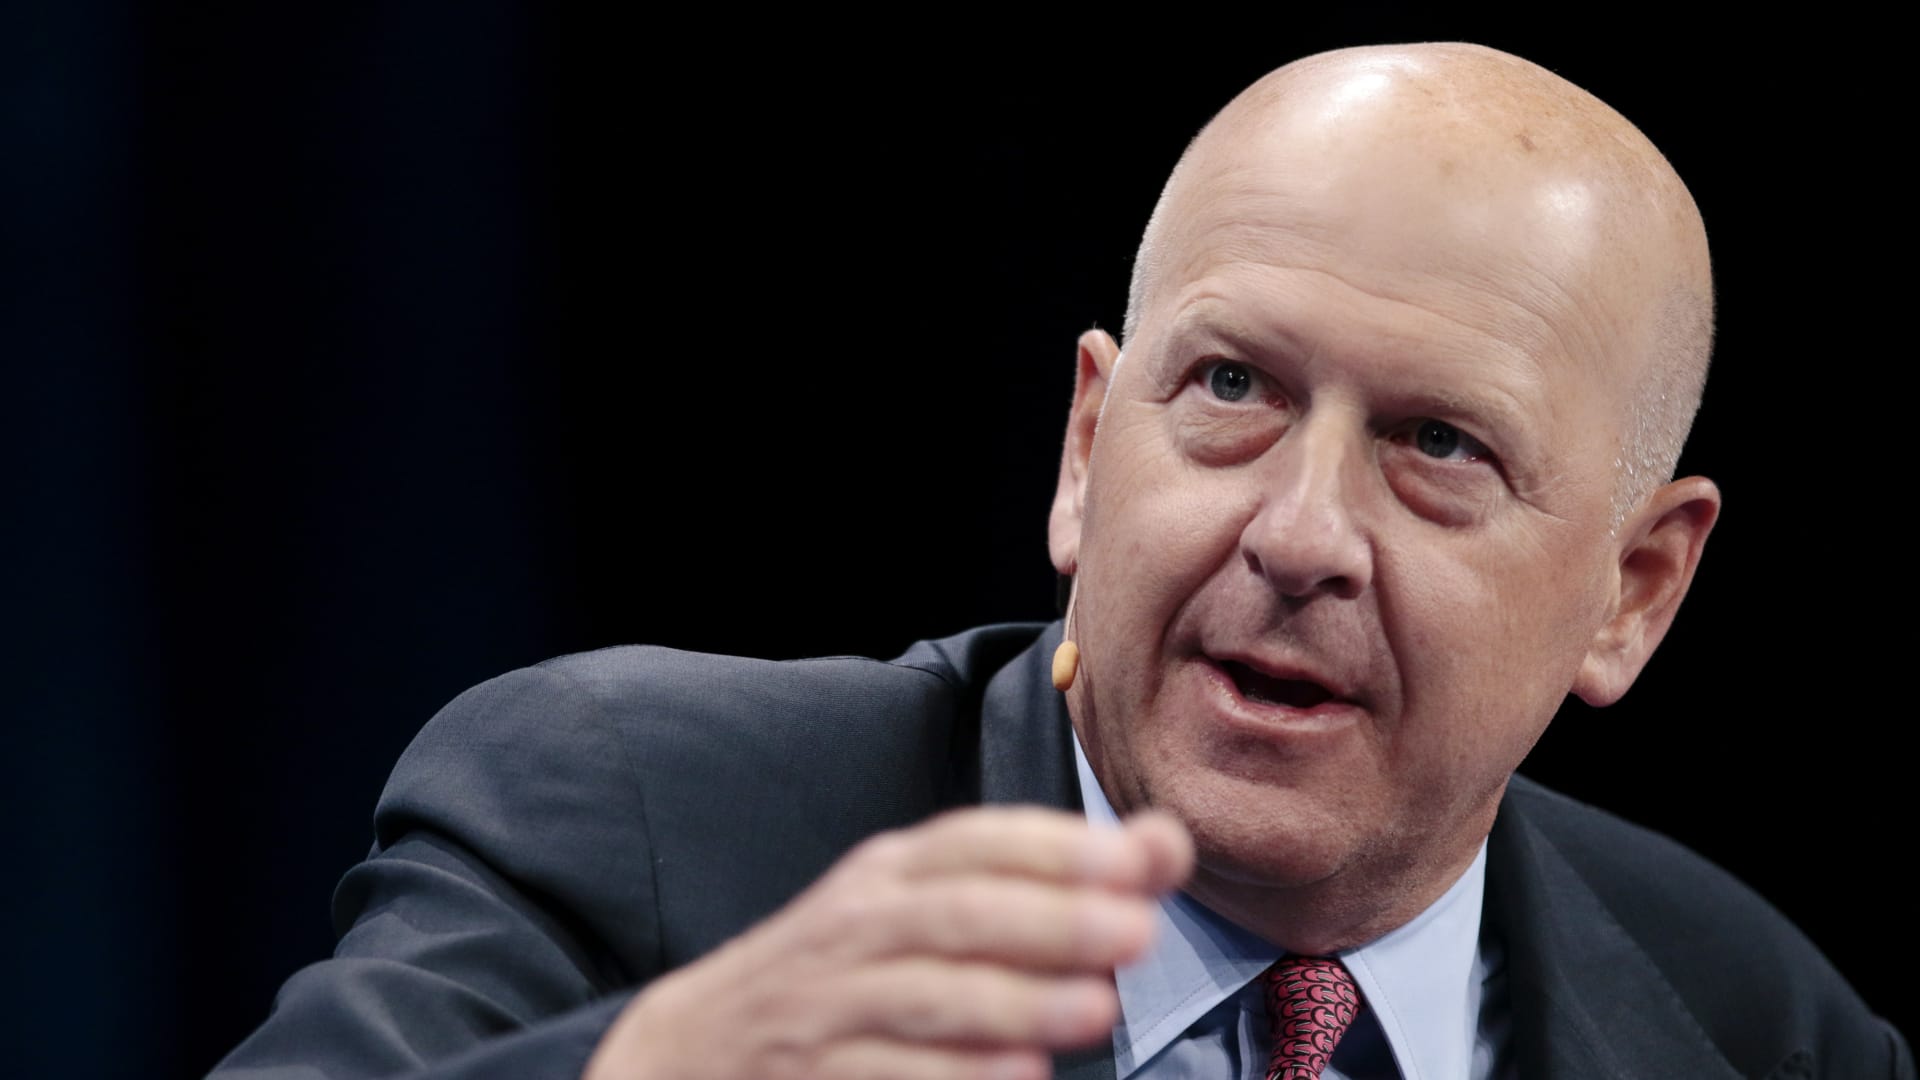 Goldman Sachs cutting jobs again amid Wall Street deals slump